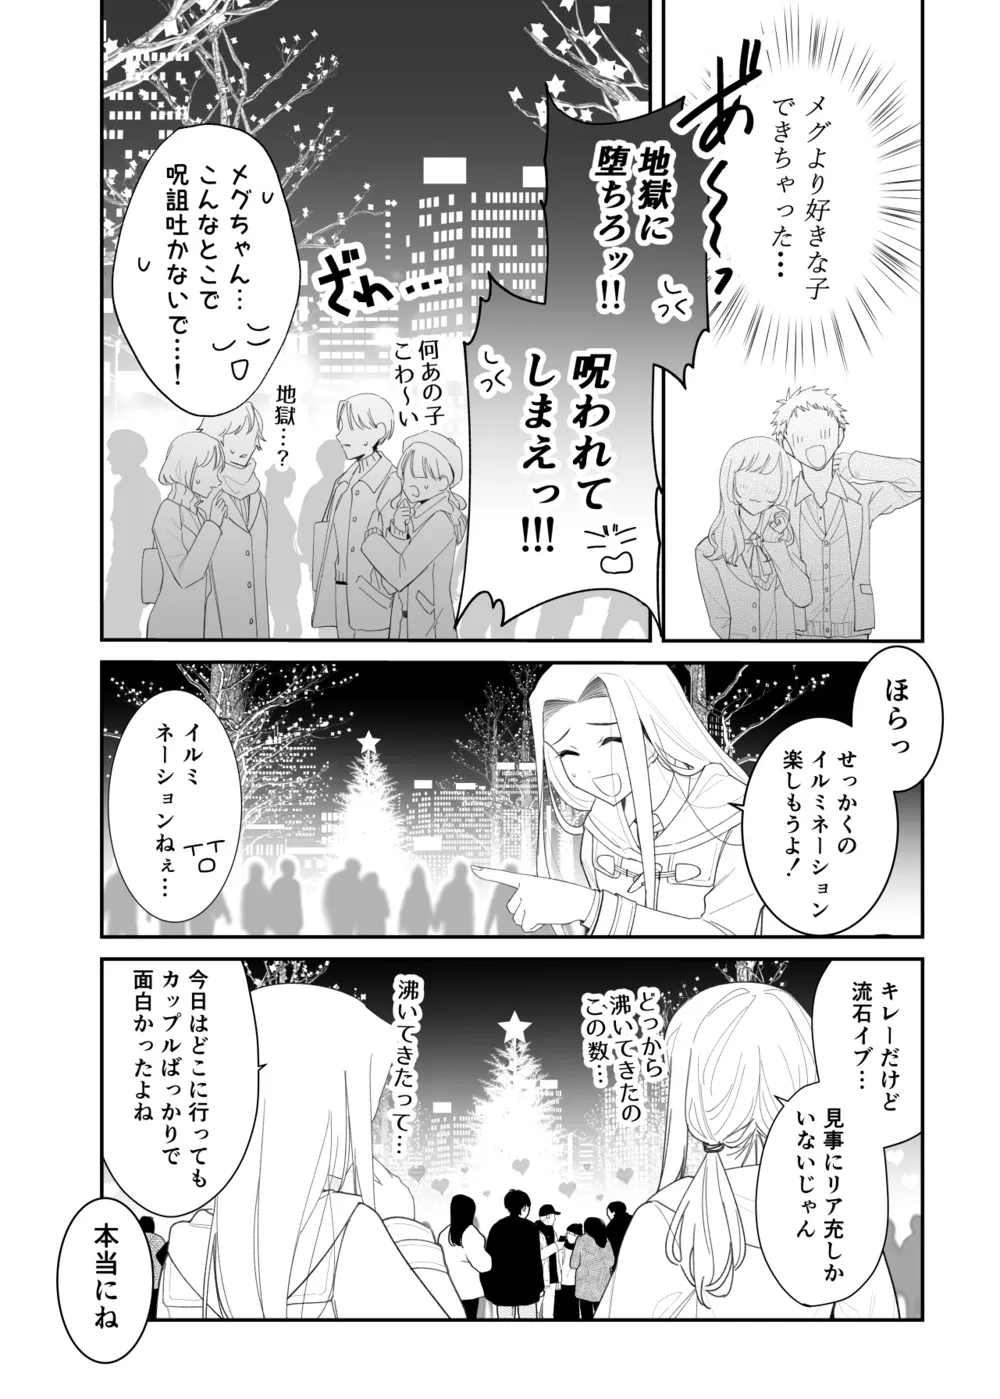 『拗らせ片想い幼馴染百合クリスマス漫画』(2/12)